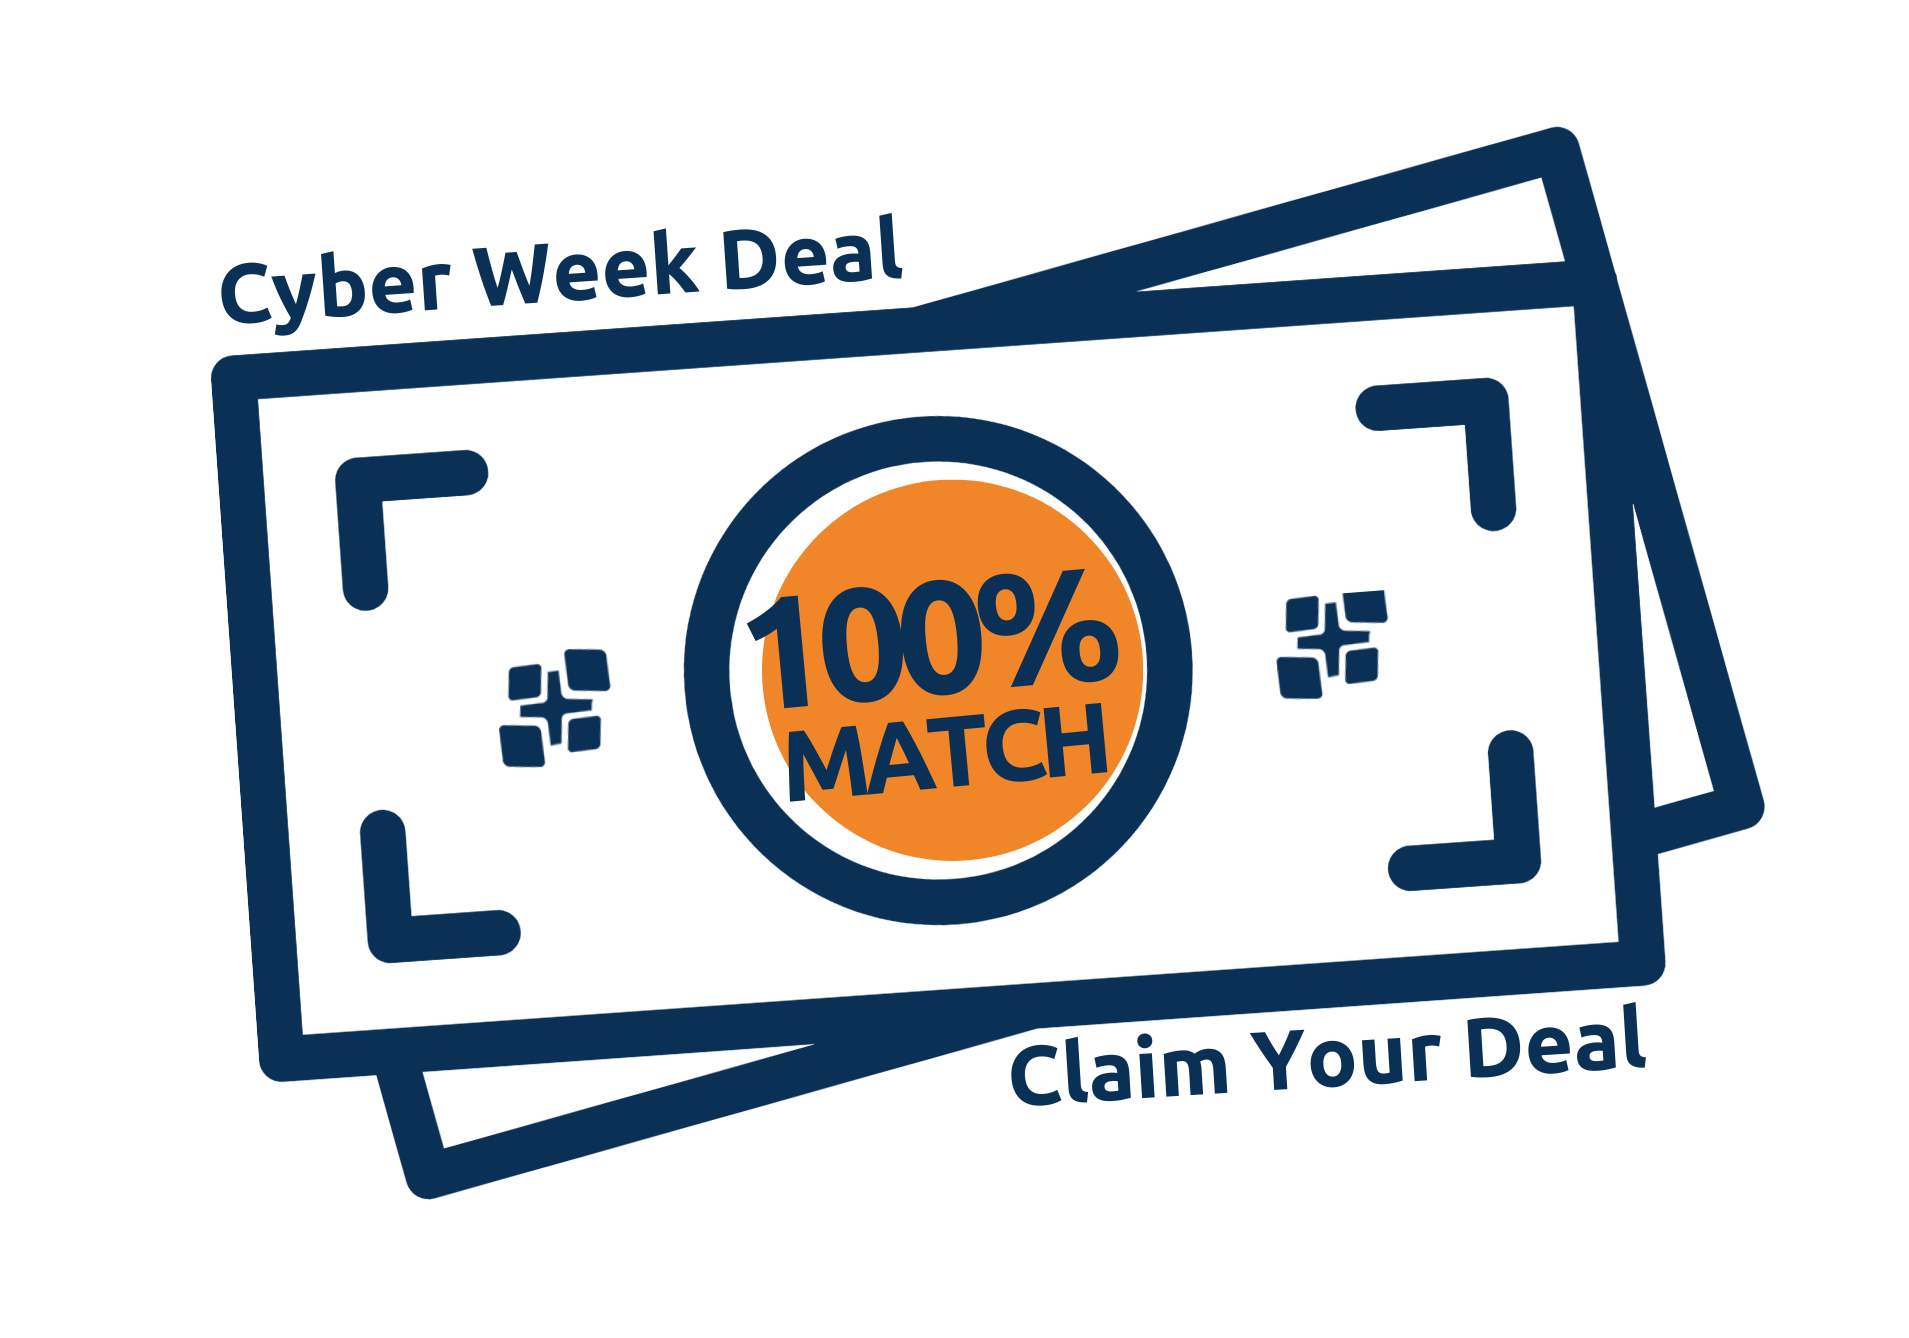 Cyber Week Deal - Get 100% Cloud Credit Match